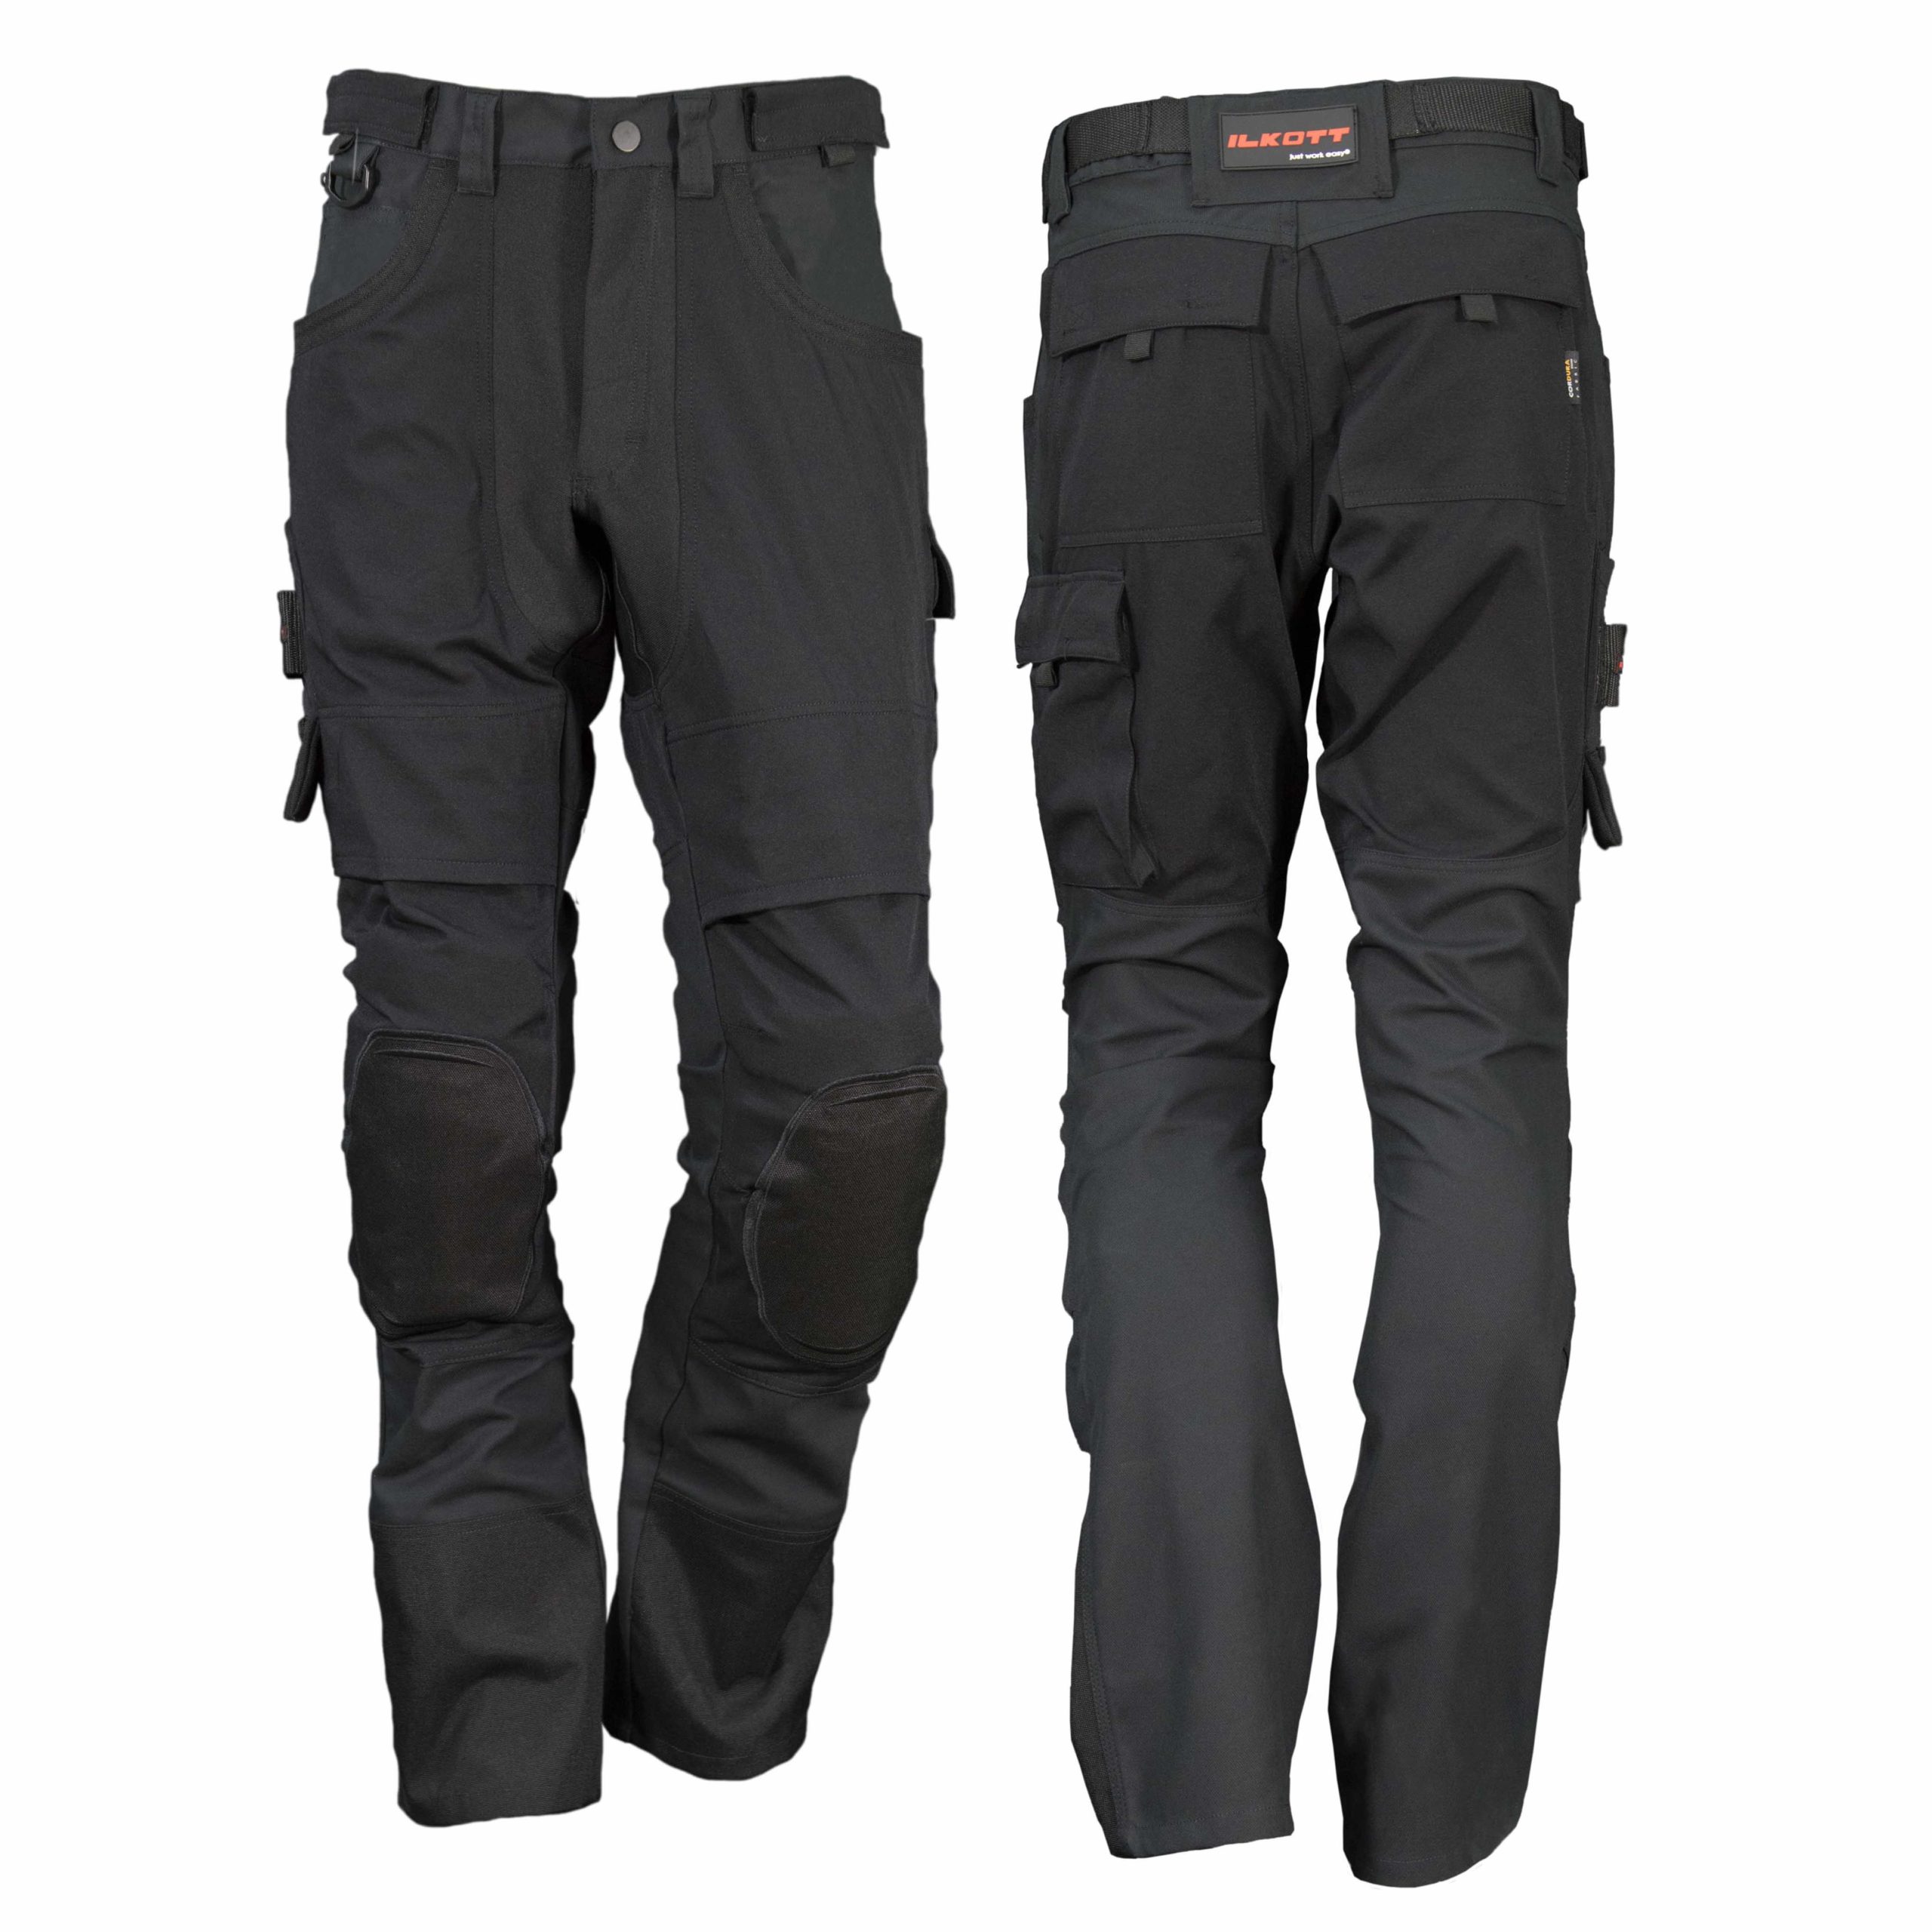 Pantalon ergonomique avec genouillères réf. YP78